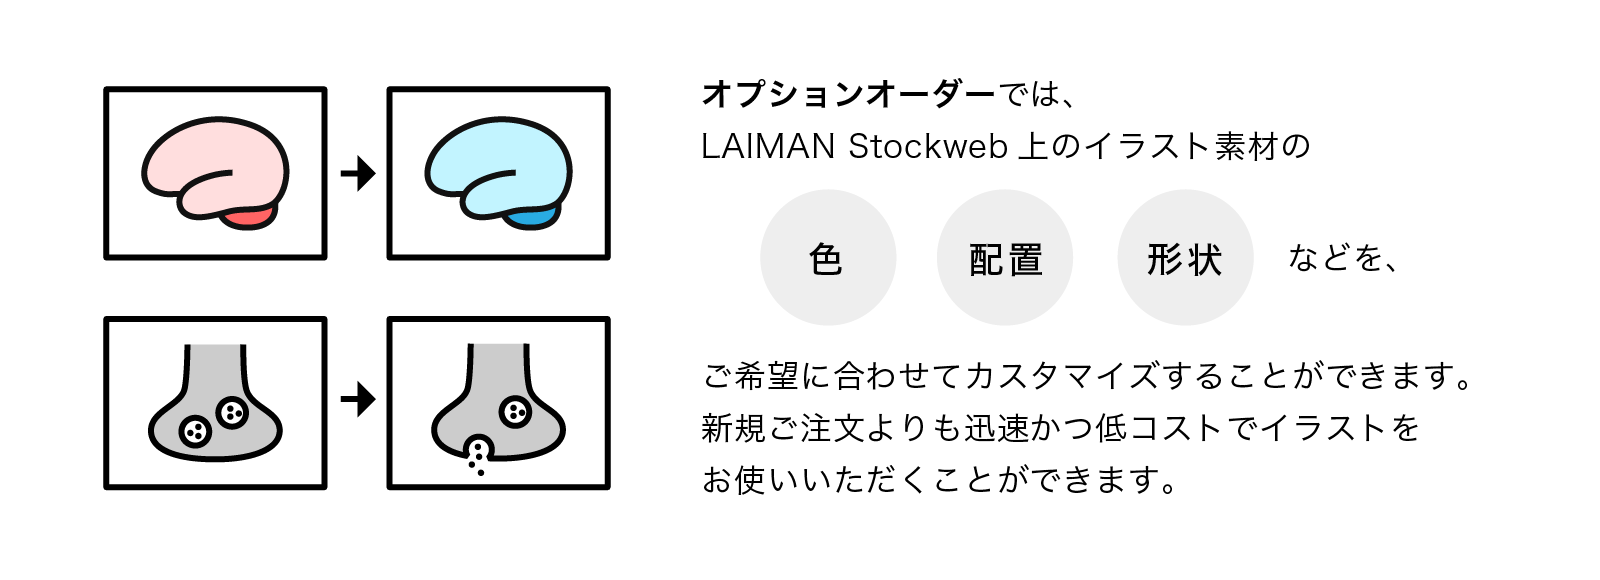 オプションオーダーではLAIMAN Stockweb上のイラスト素材の色や配置、形状などを、ご希望に合わせてカスタマイズすることができます。新規ご注文よりも迅速かつ低コストでイラストをお使いいただくことができます。